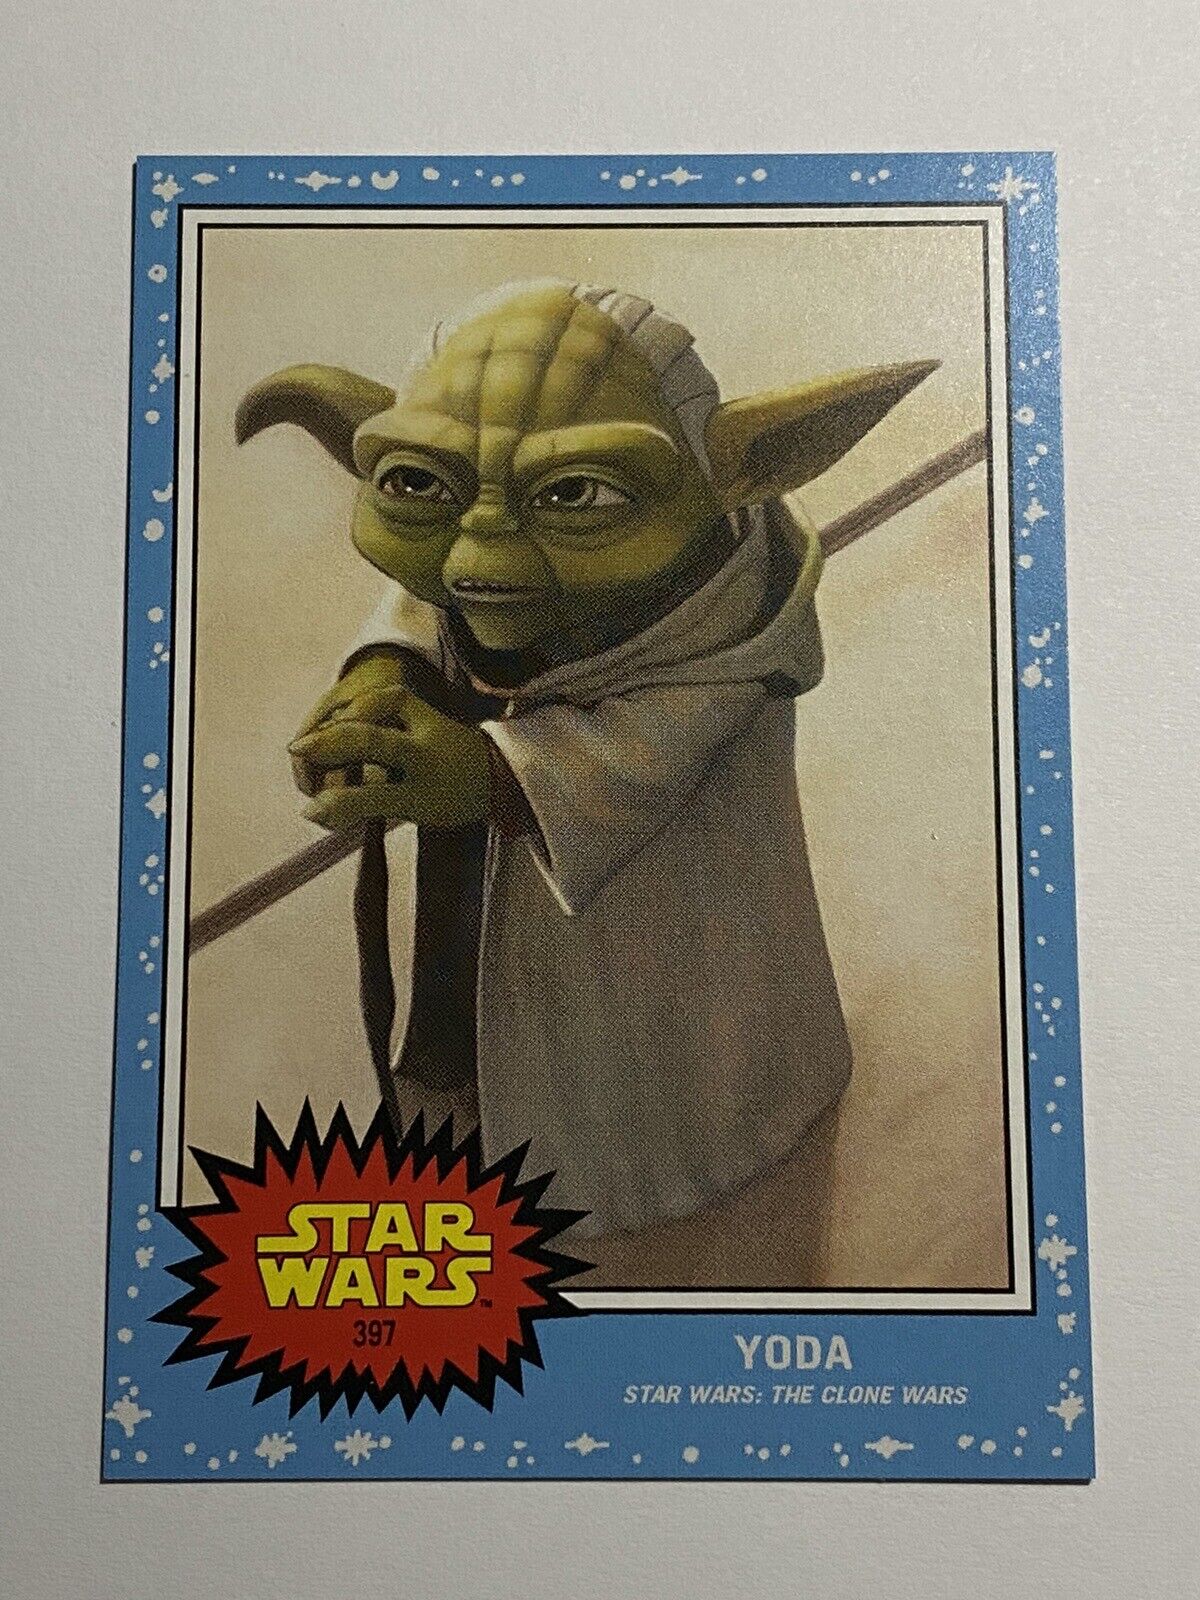 Star Wars YODA The Clone Wars, Star Wars Living Card #397